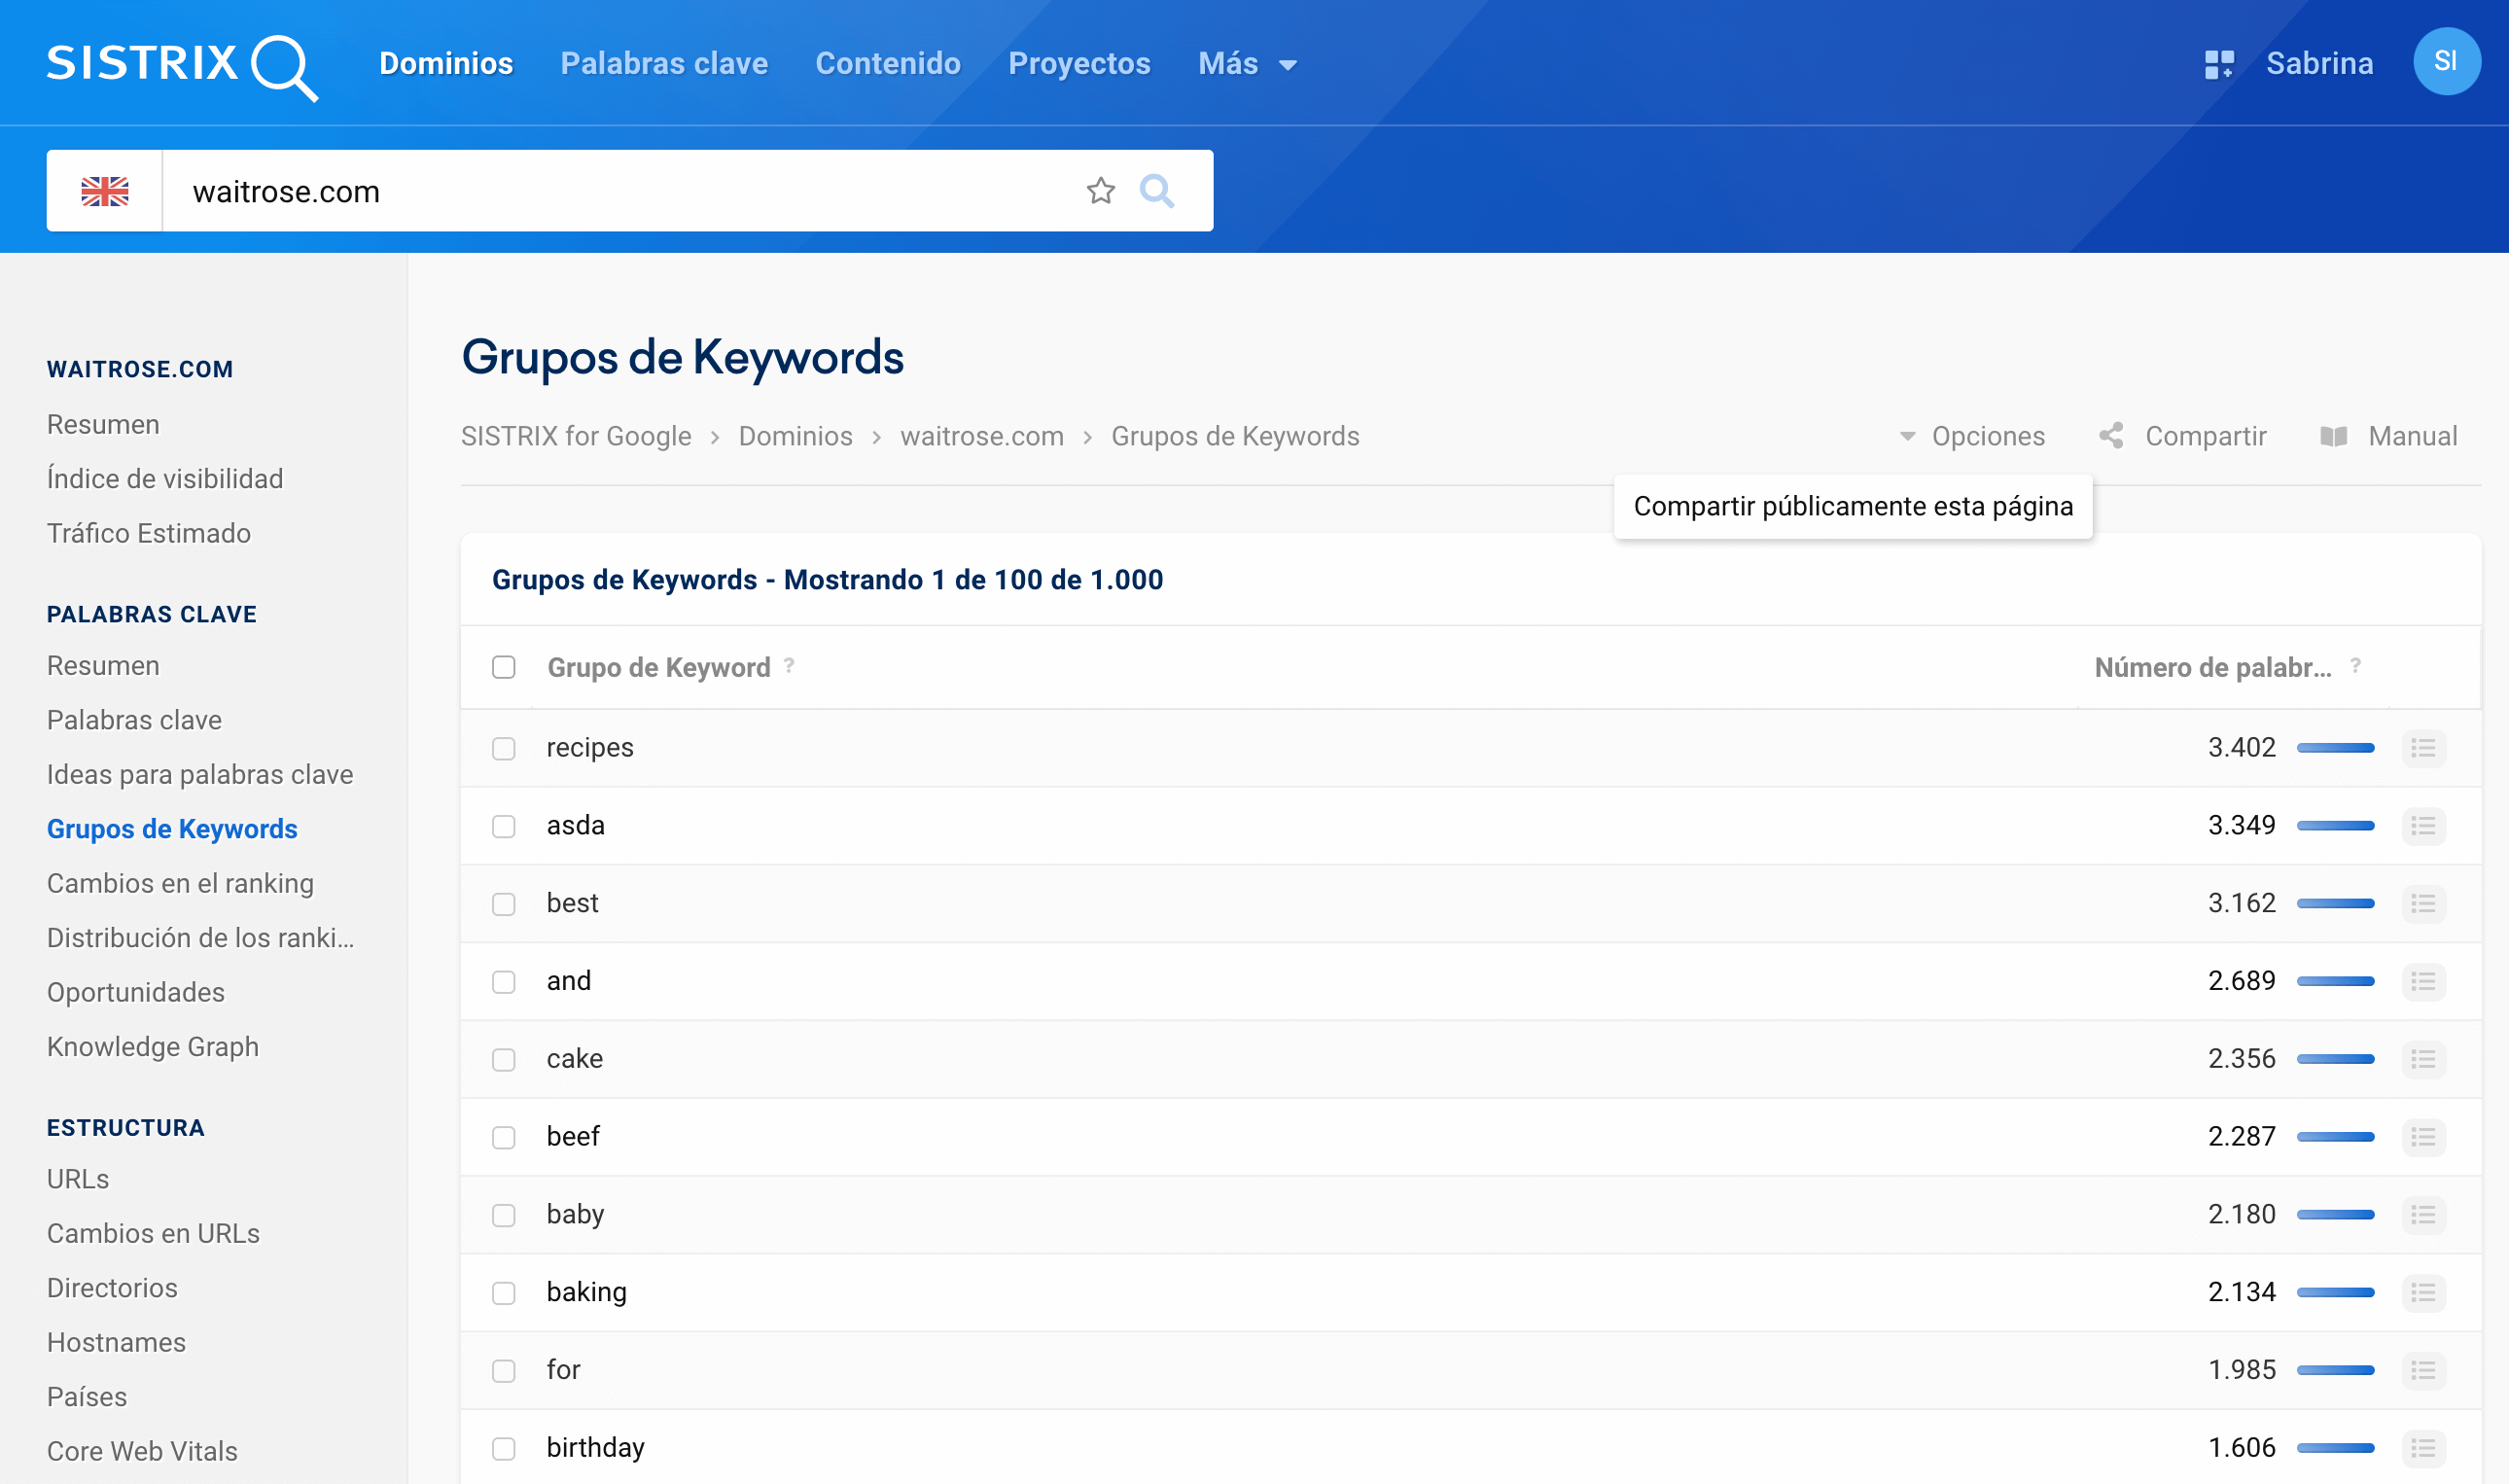 waitrose.com grupos de keywords